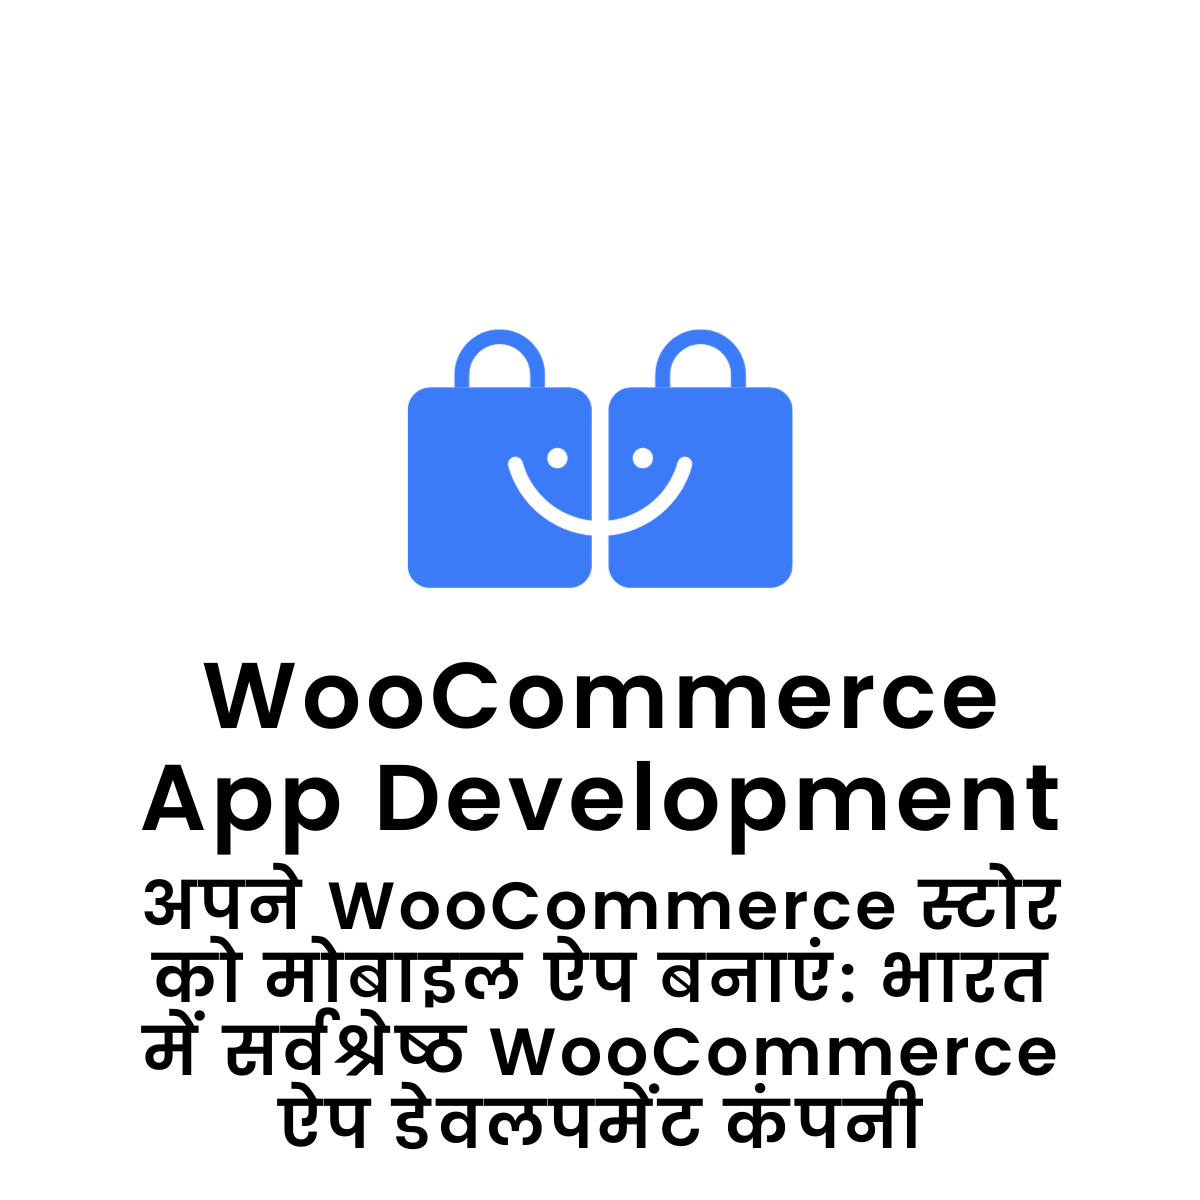 WooCommerce App Development अपने WooCommerce स्टोर को मोबाइल ऐप बनाएं: भारत में सर्वश्रेष्ठ WooCommerce ऐप डेवलपमेंट कंपनी